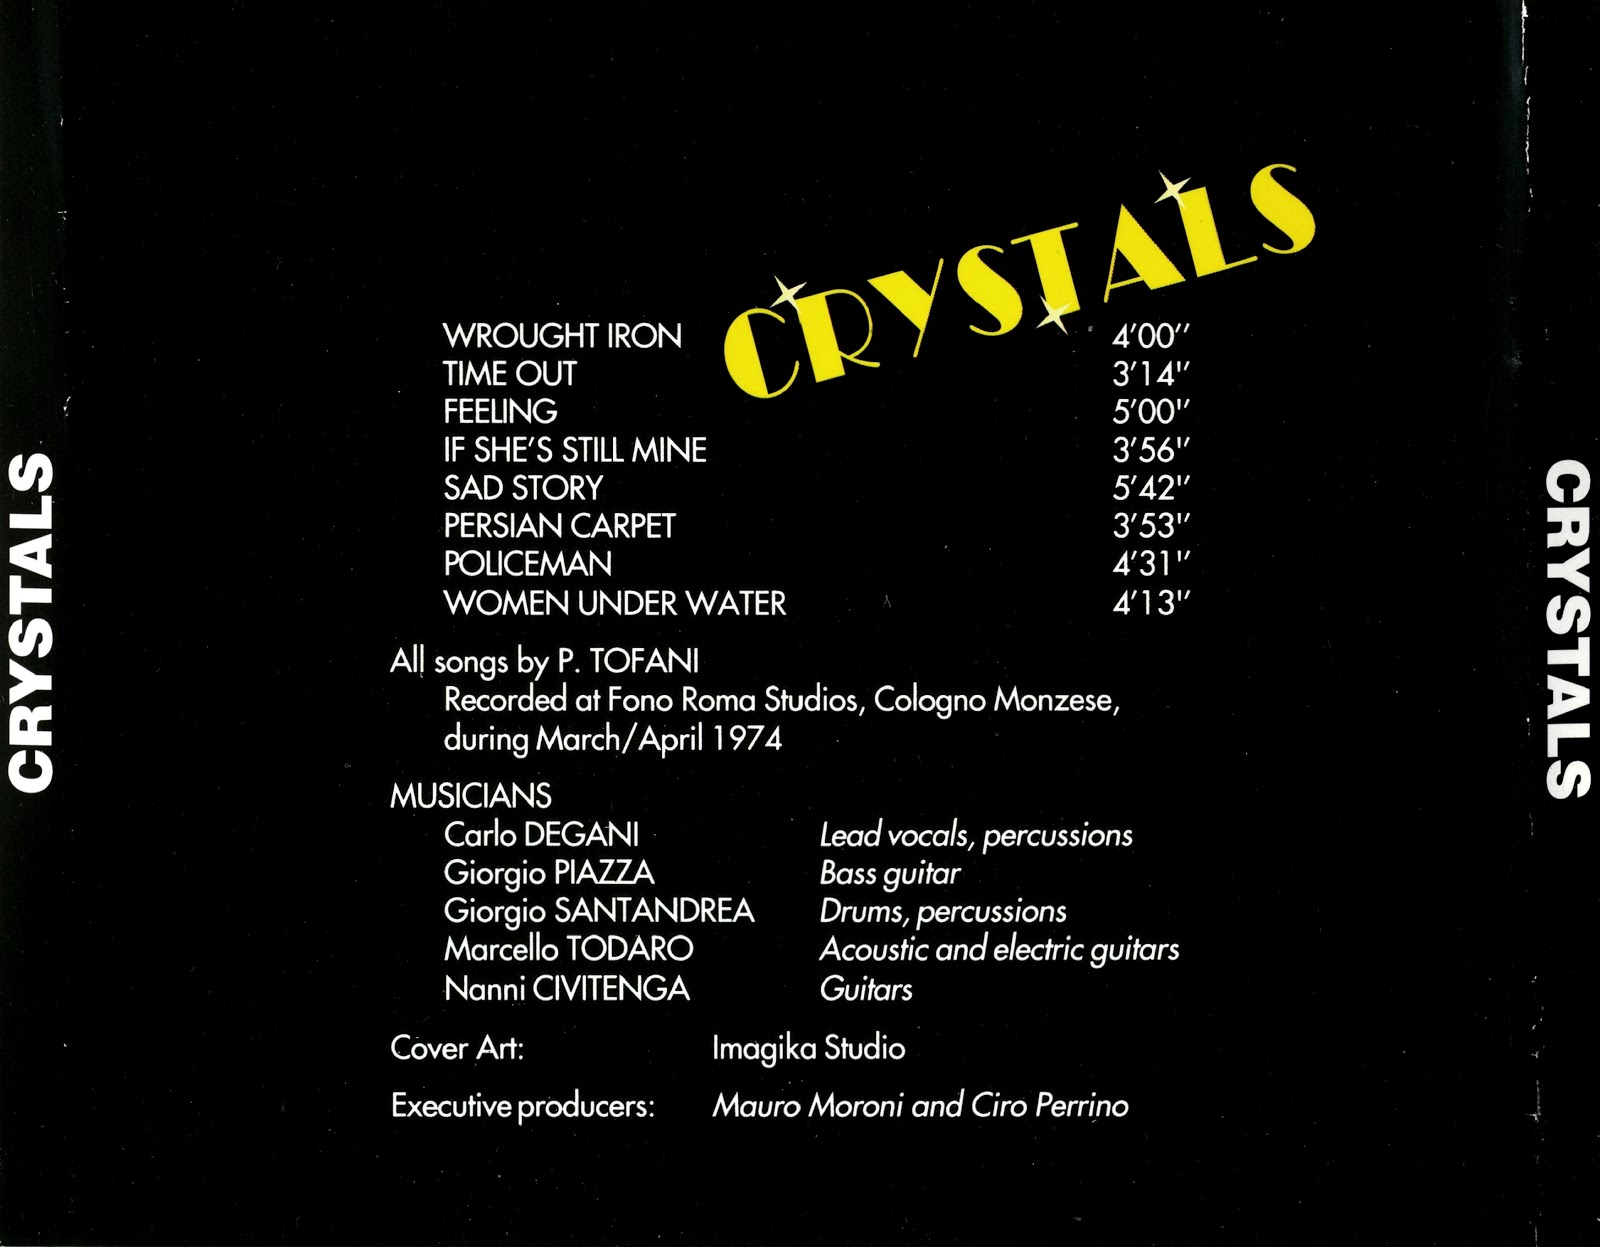 Crystals mp3